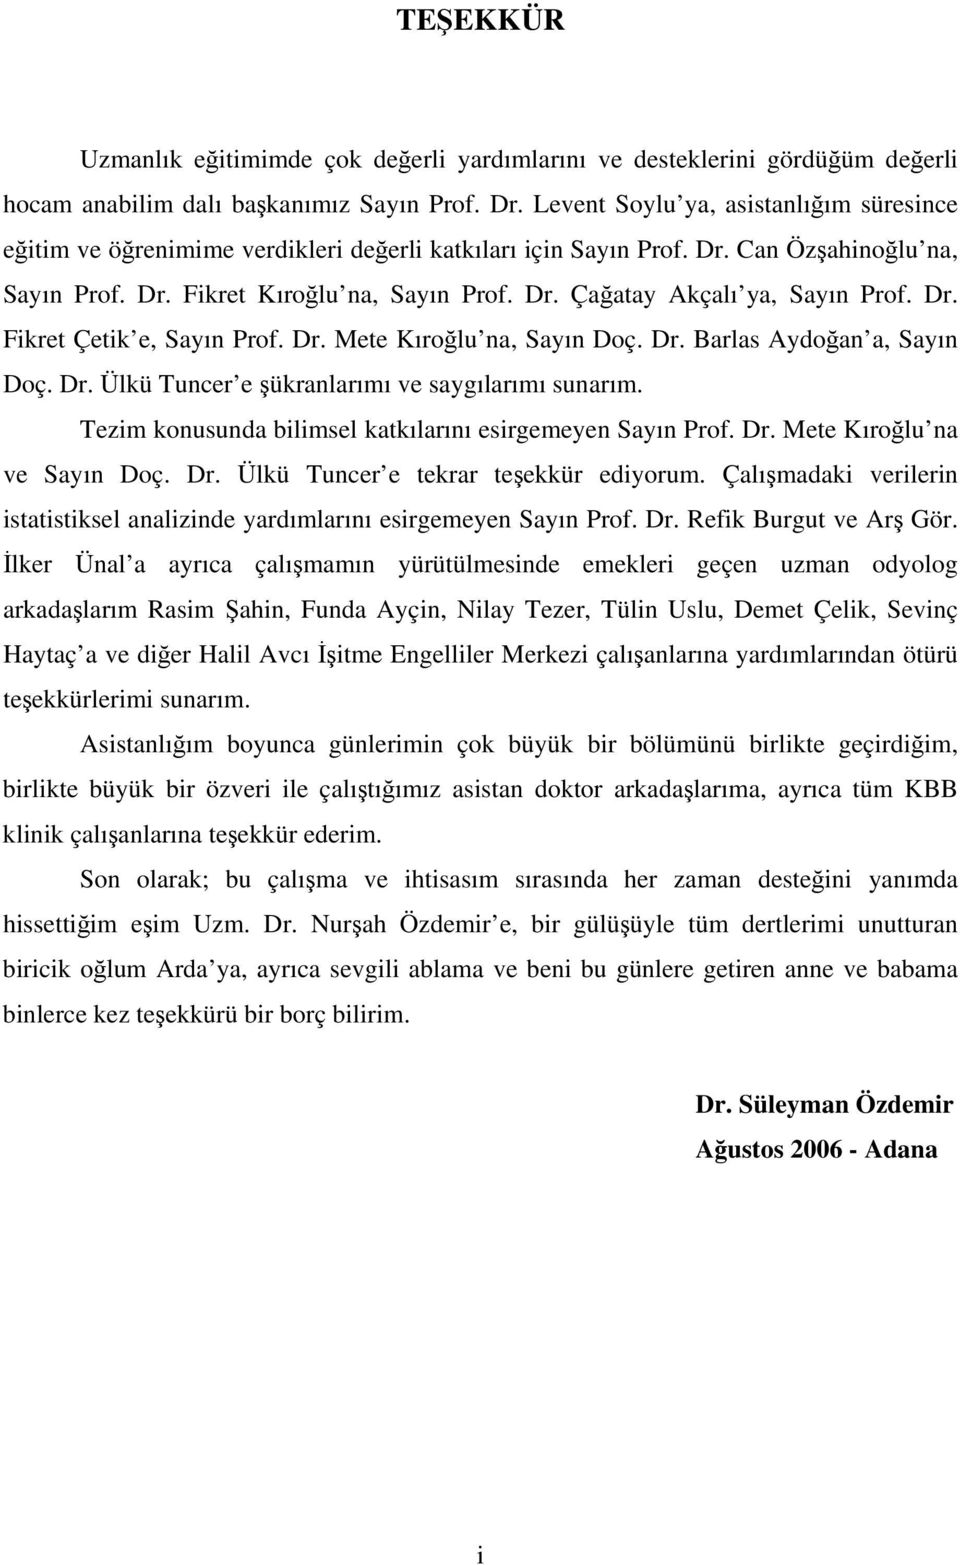 Dr. Fikret Çetik e, Sayın Prof. Dr. Mete Kıroğlu na, Sayın Doç. Dr. Barlas Aydoğan a, Sayın Doç. Dr. Ülkü Tuncer e şükranlarımı ve saygılarımı sunarım.